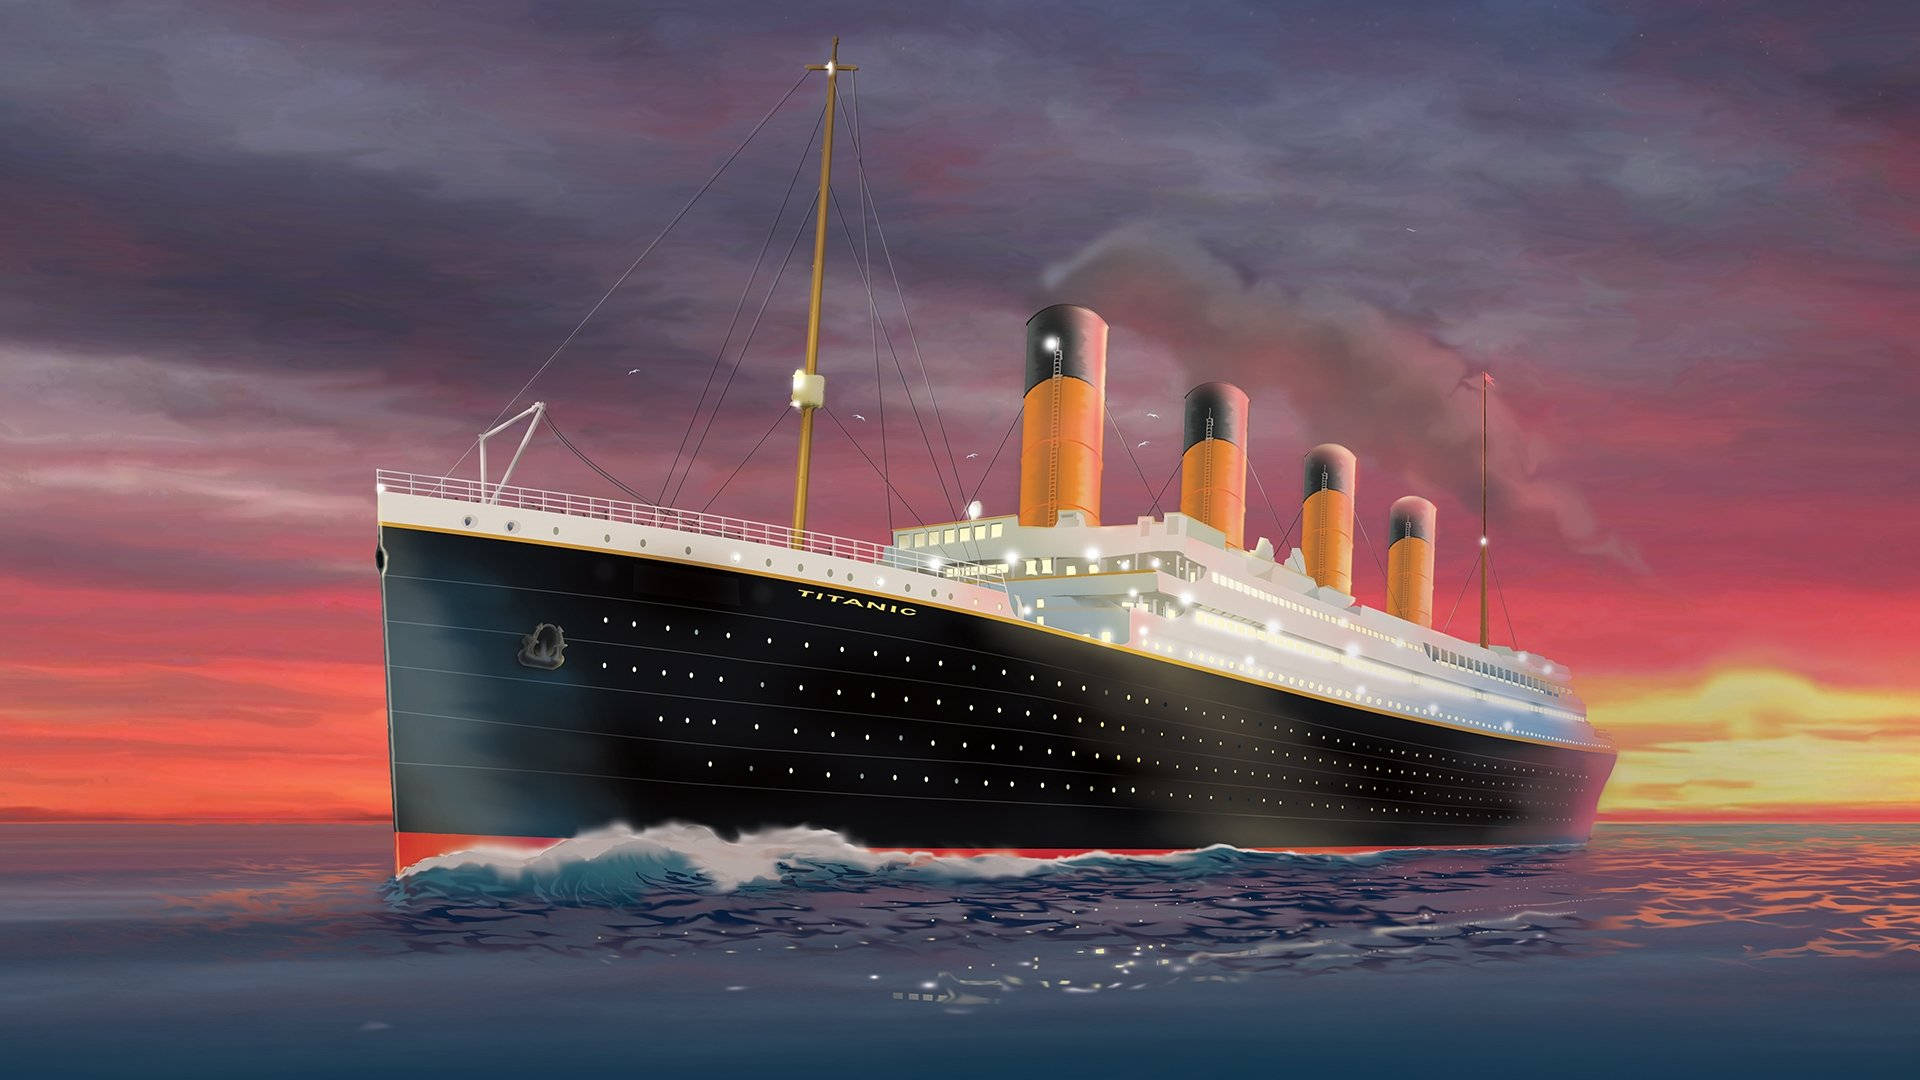 Hình nền  đêm Nước Tàu du lịch Du thuyền nhãn hiệu Titanic Tàu thủy  Đồ họa Hình nền máy tính phông chữ kiến trúc hàng hải tàu chở khách  Tàu biển